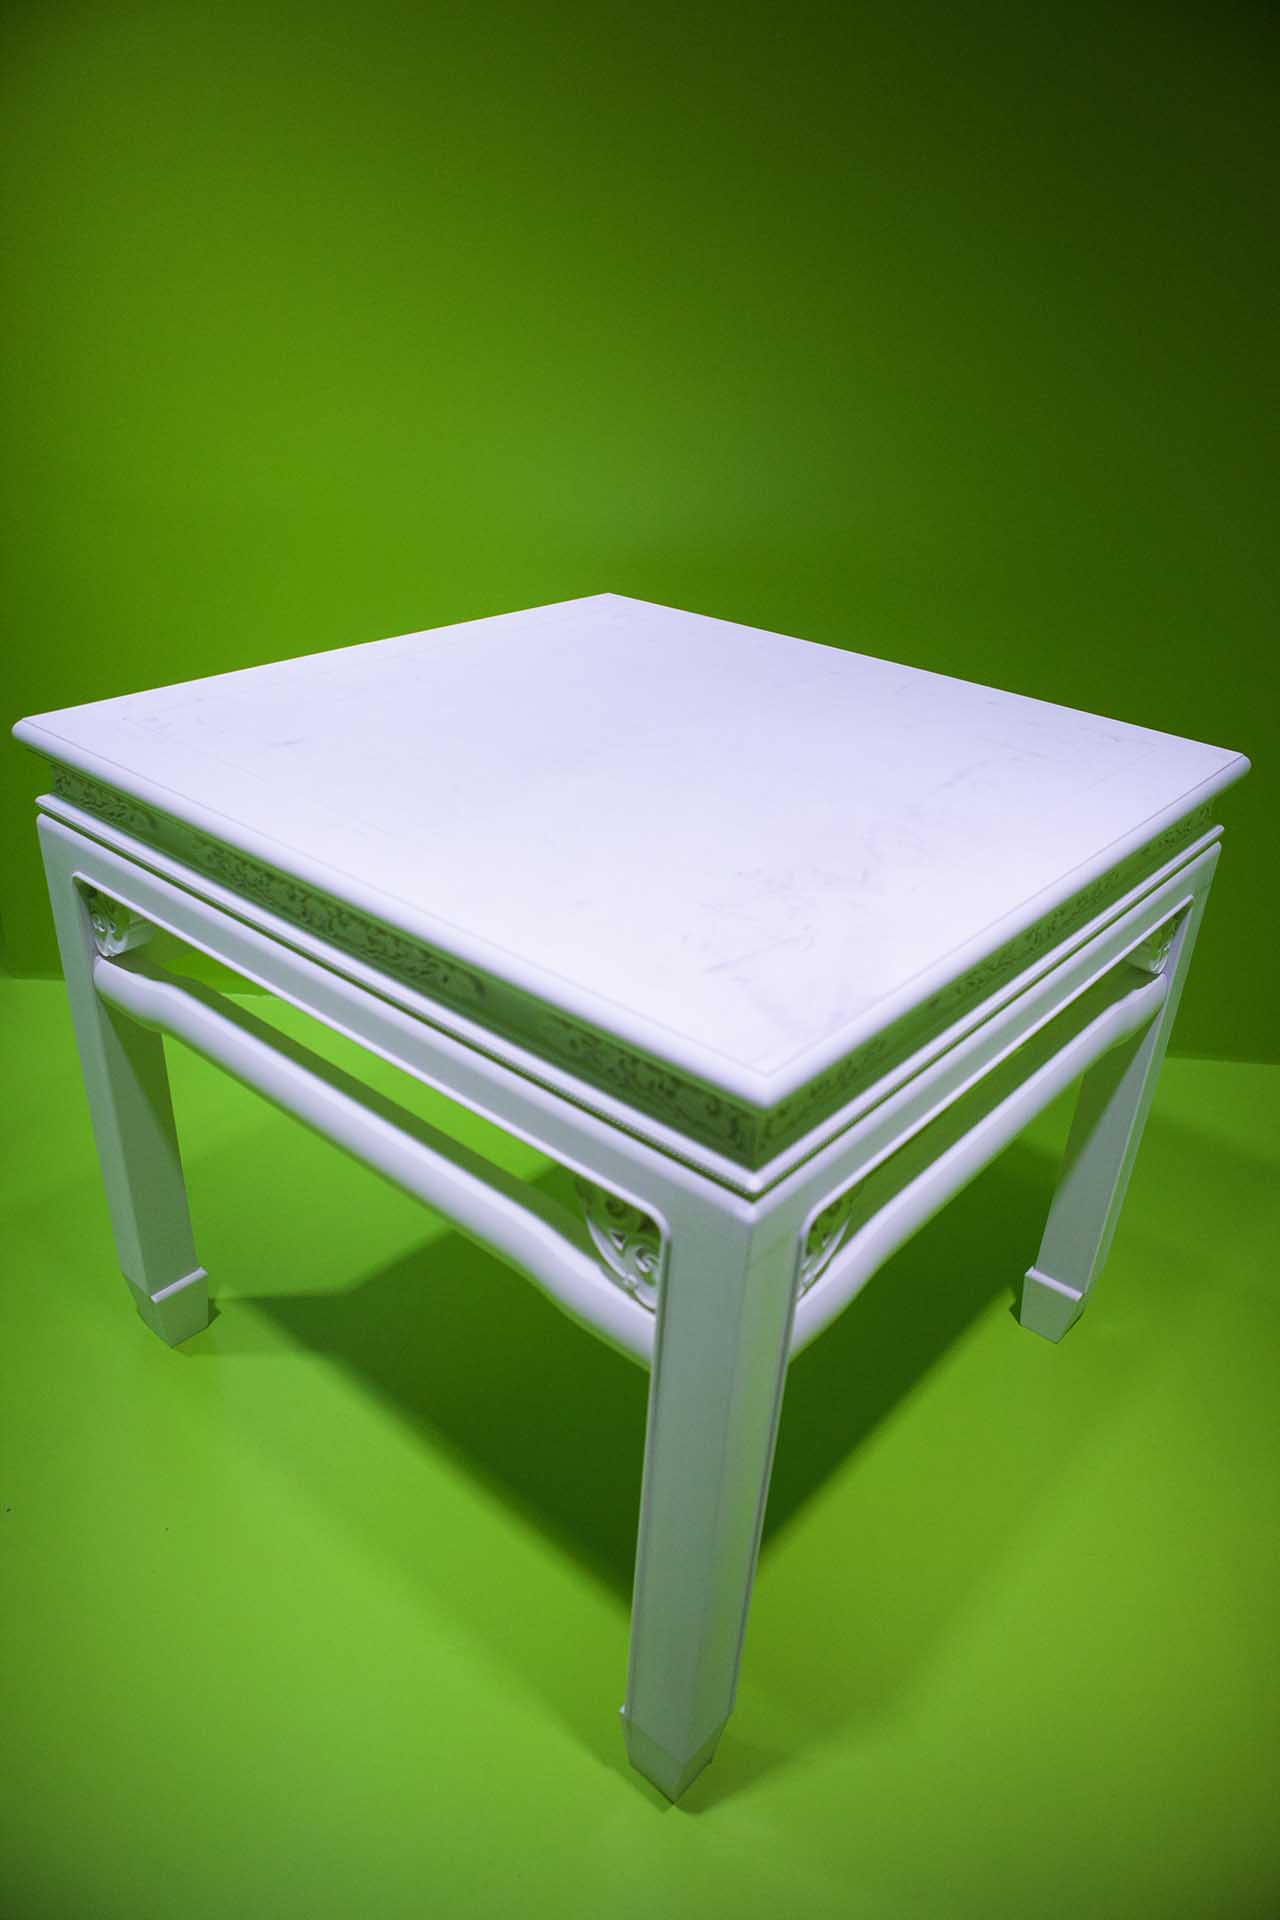 許家維 鐵甲元帥－白色四方桌 裝置 桌子108x106x115cm、台座 148x146x30cm